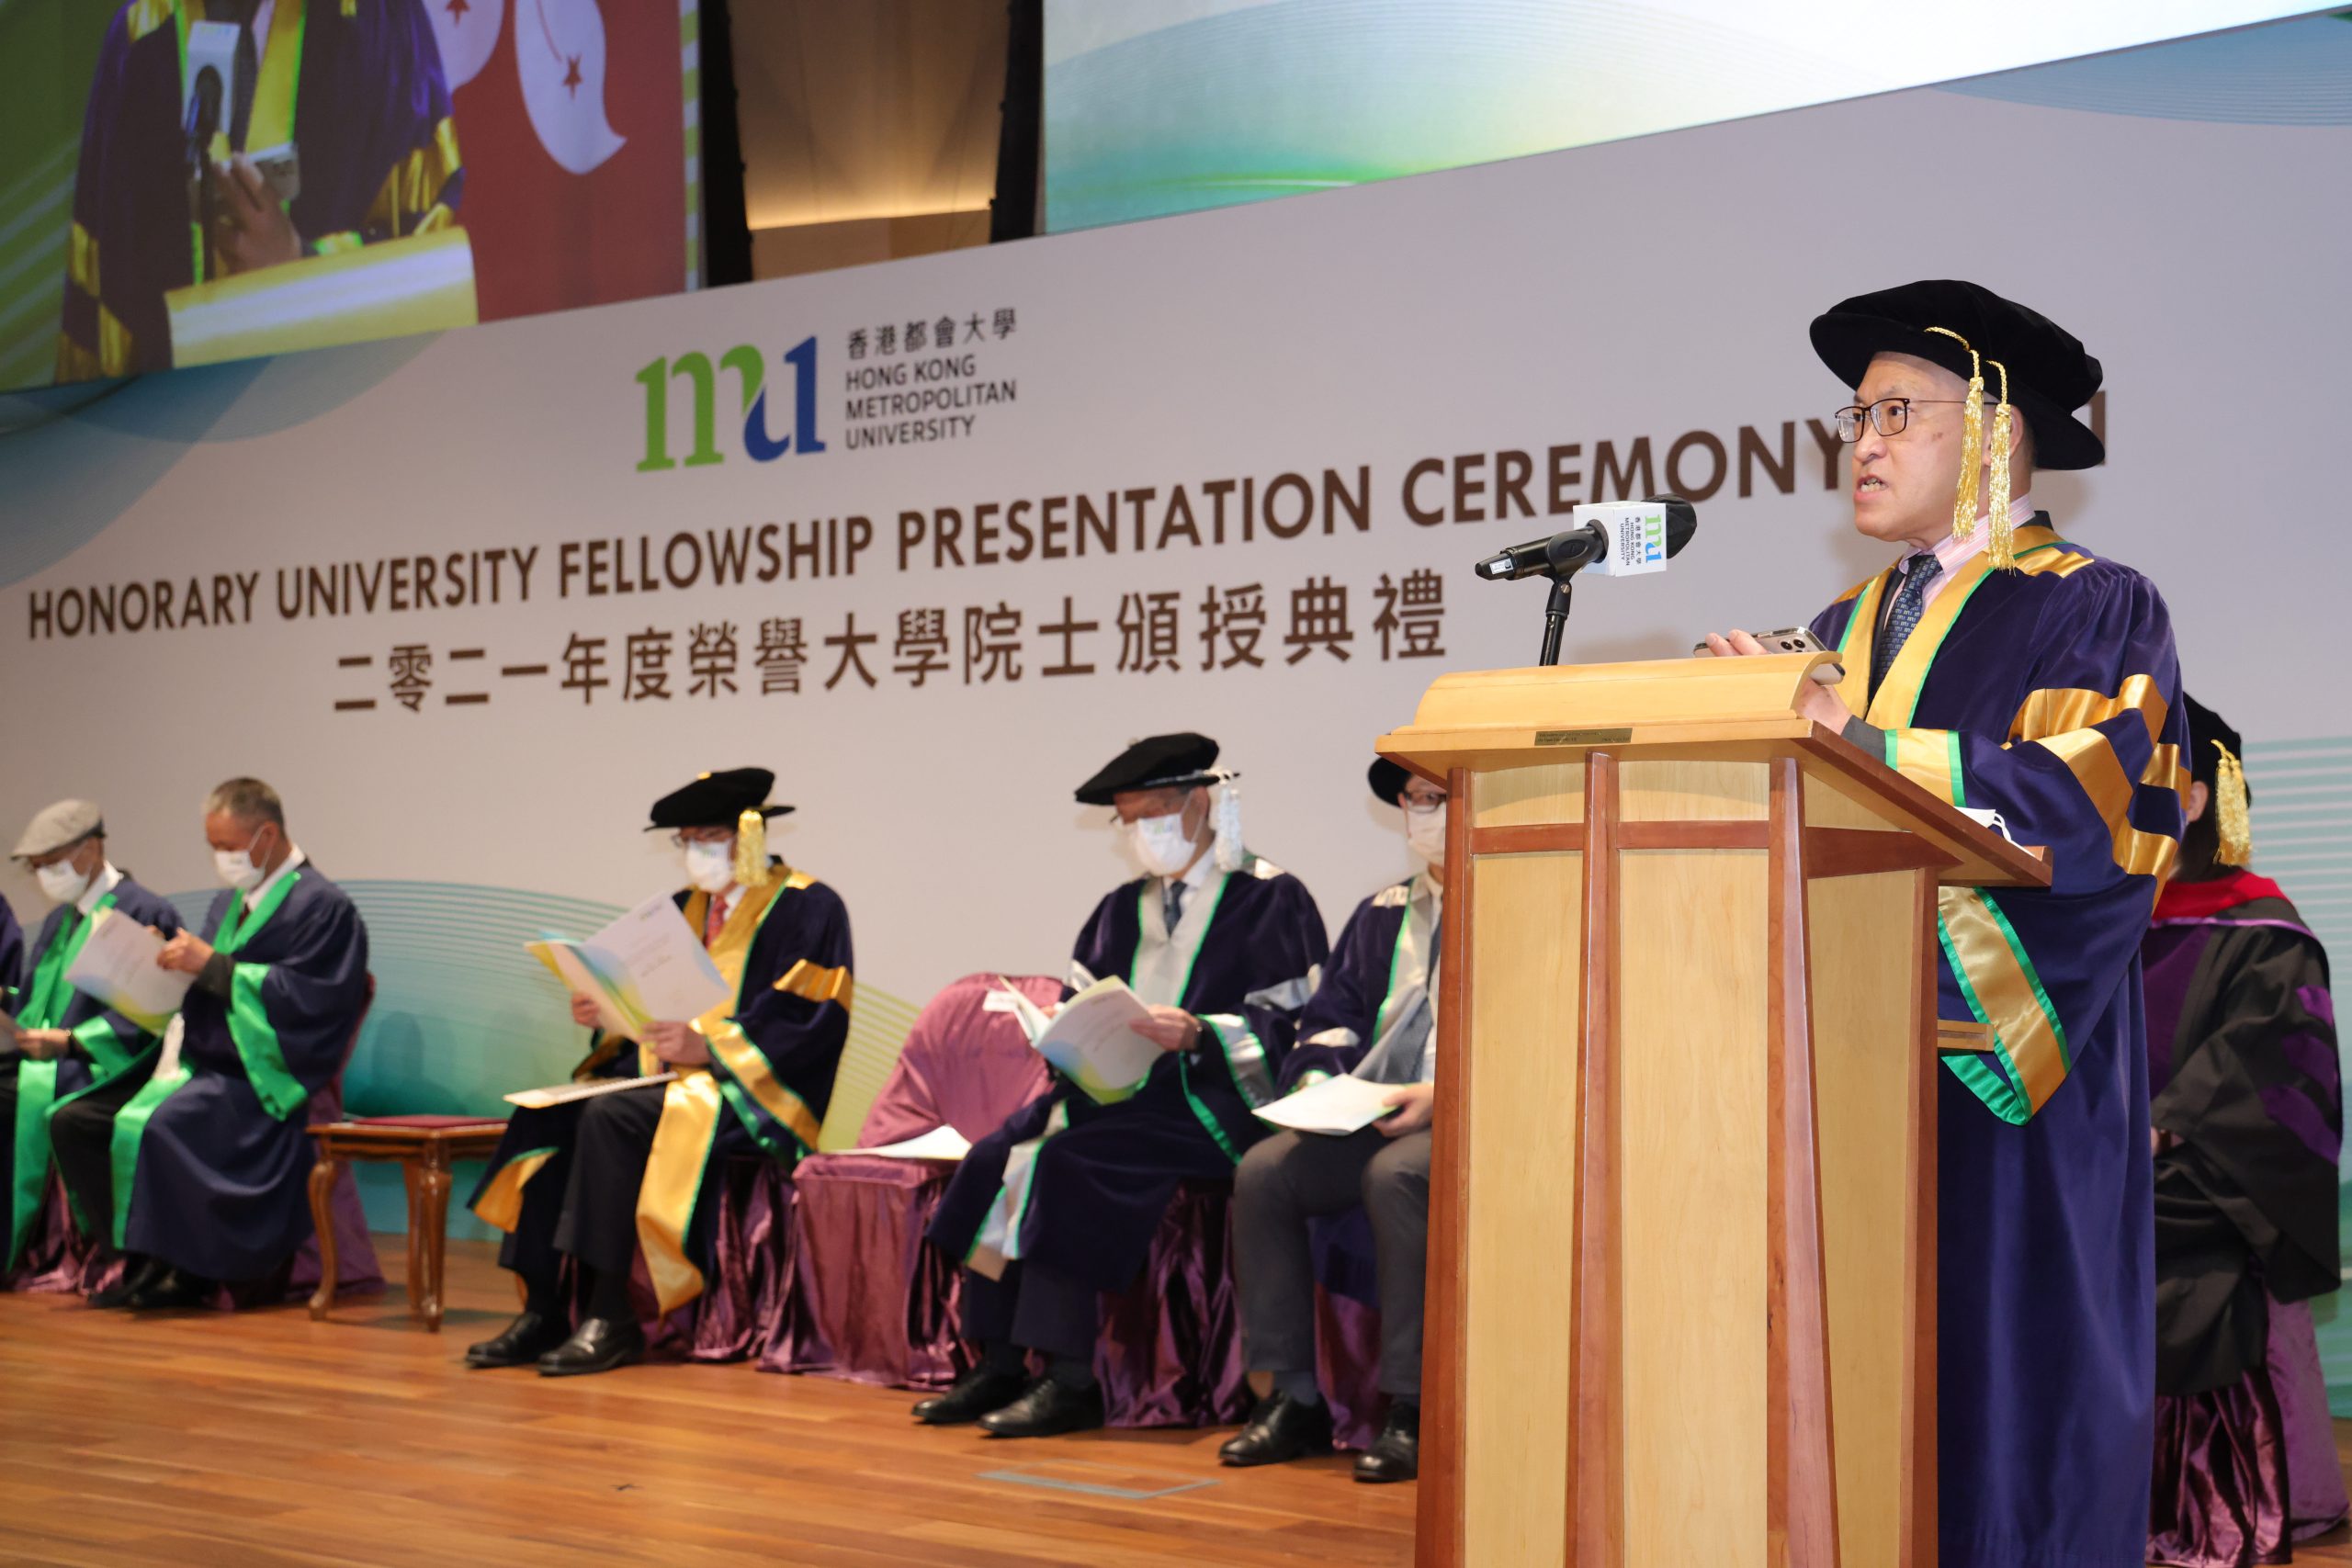 典禮上，校董會主席黃奕鑑讚揚三位榮譽大學院士在各自領域的成就以及對社會的重大貢獻。